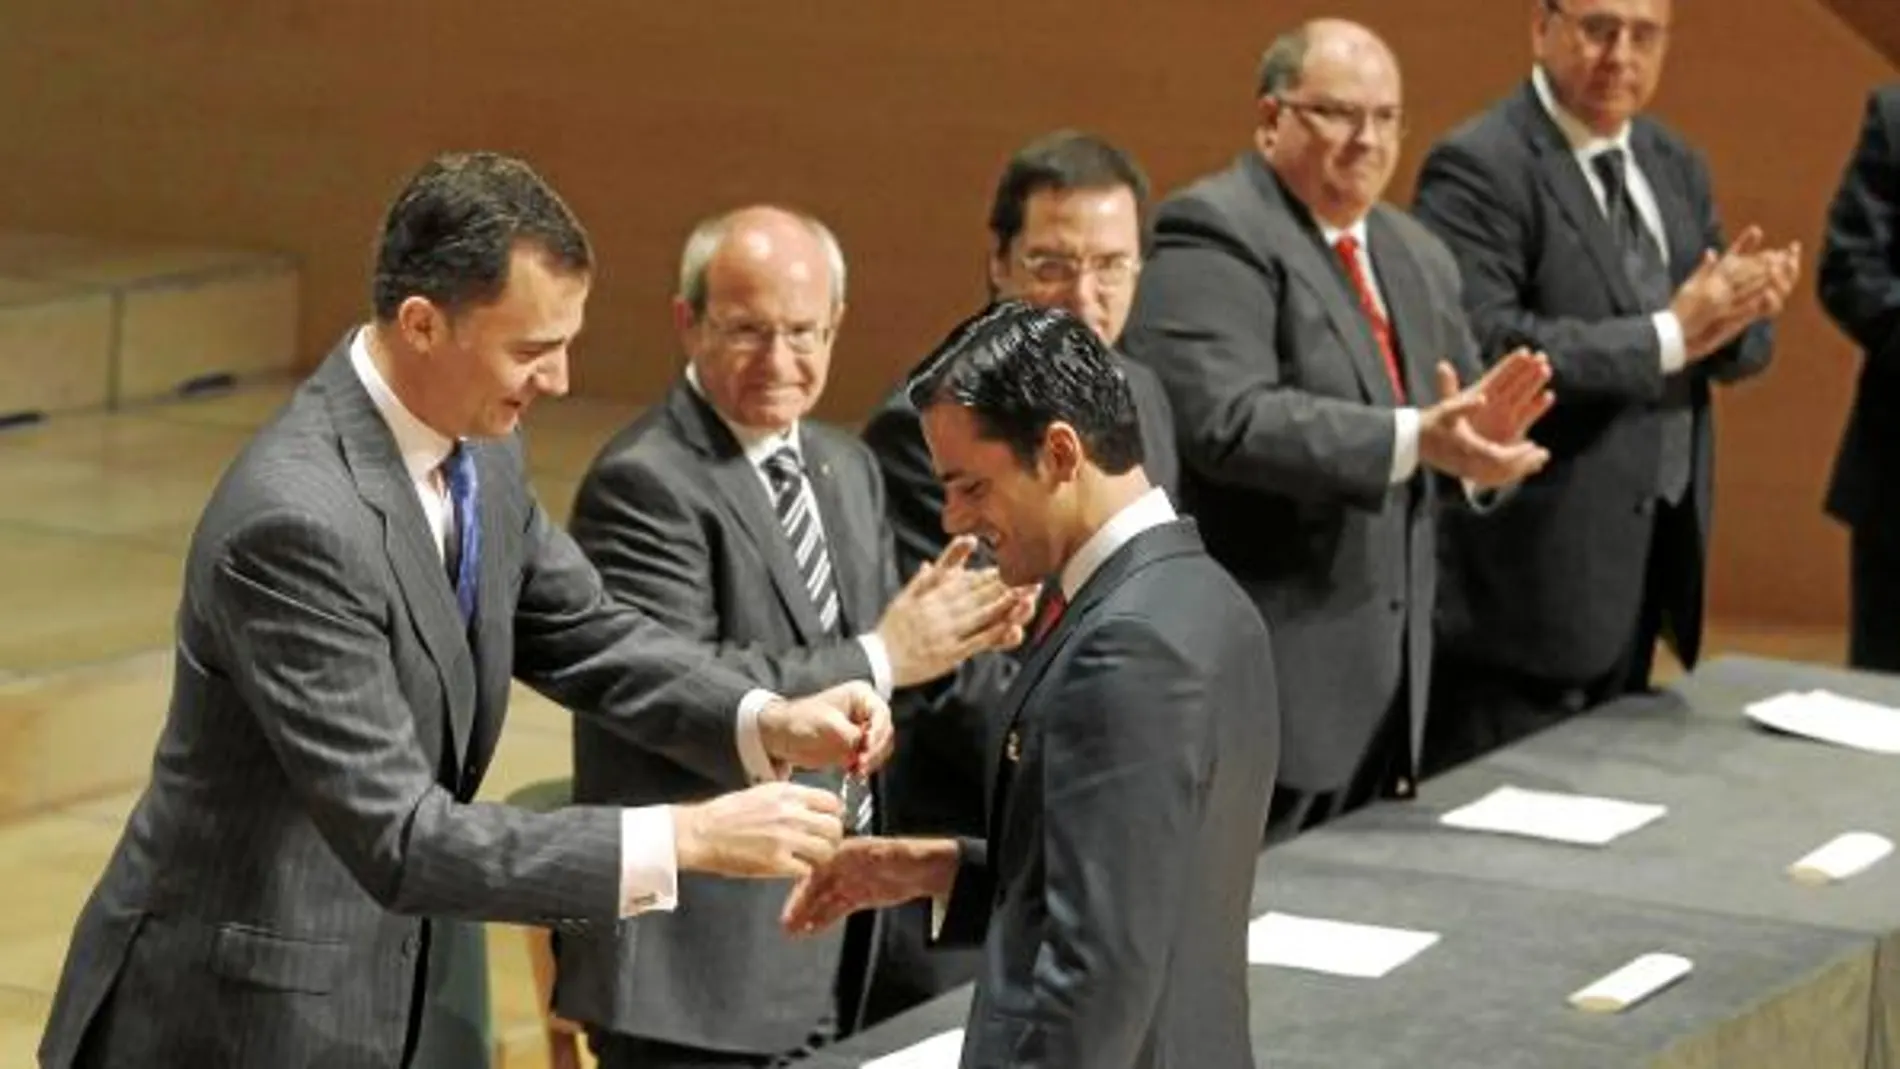 Don Felipe de Borbón y José Montilla felicitaron al número uno de la promoción de jueces, Joaquín Elias Gadea